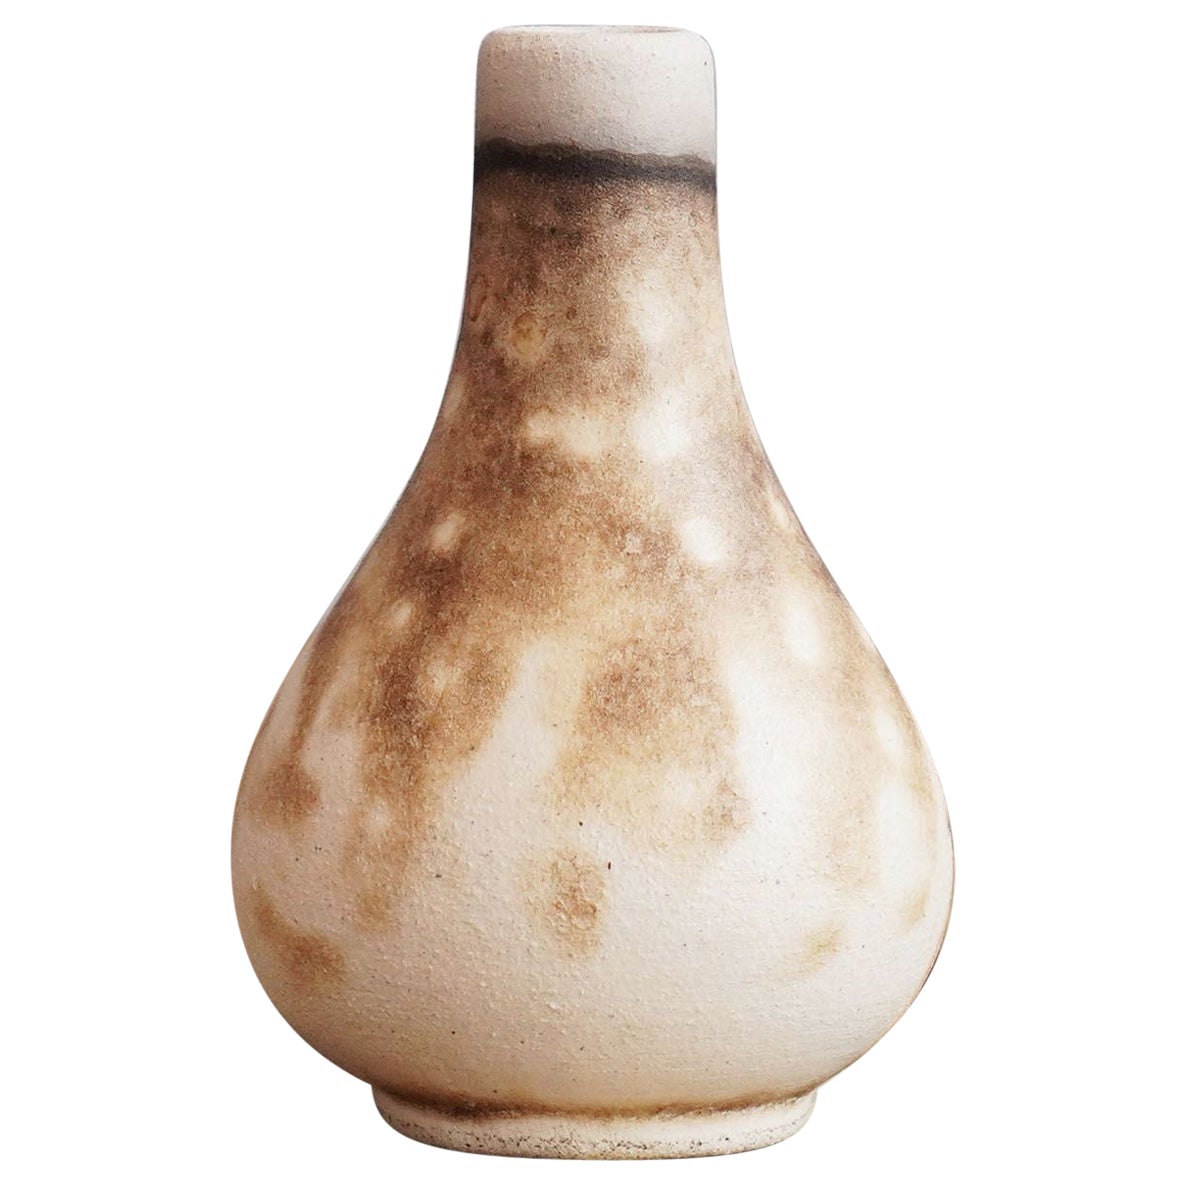 Hana W Mini Vase Raku Ceramic, Obvara, Handmade Home Decor Gift